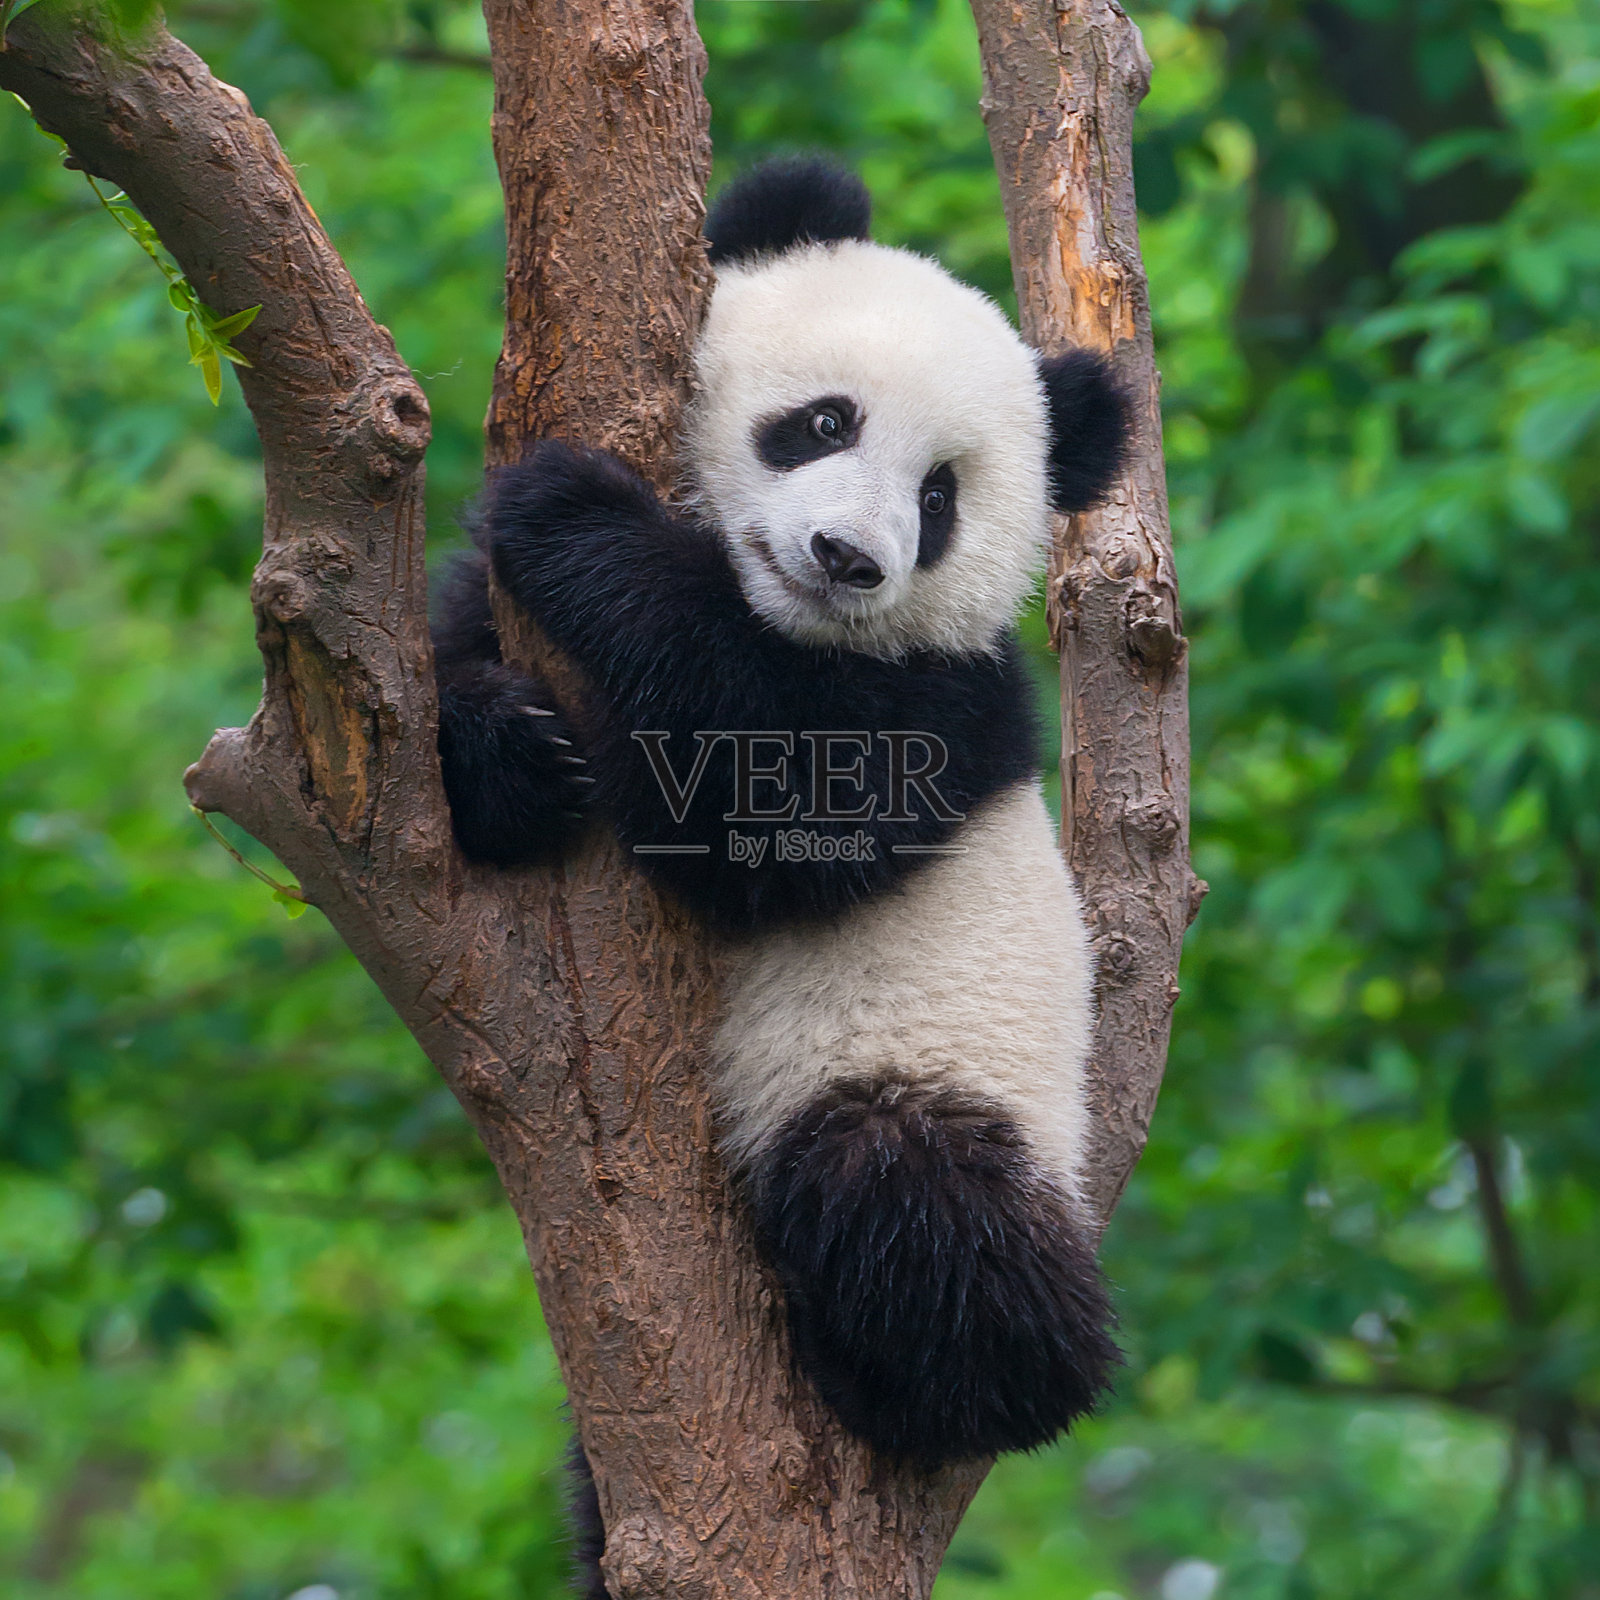 可爱的熊猫熊在树上爬照片摄影图片